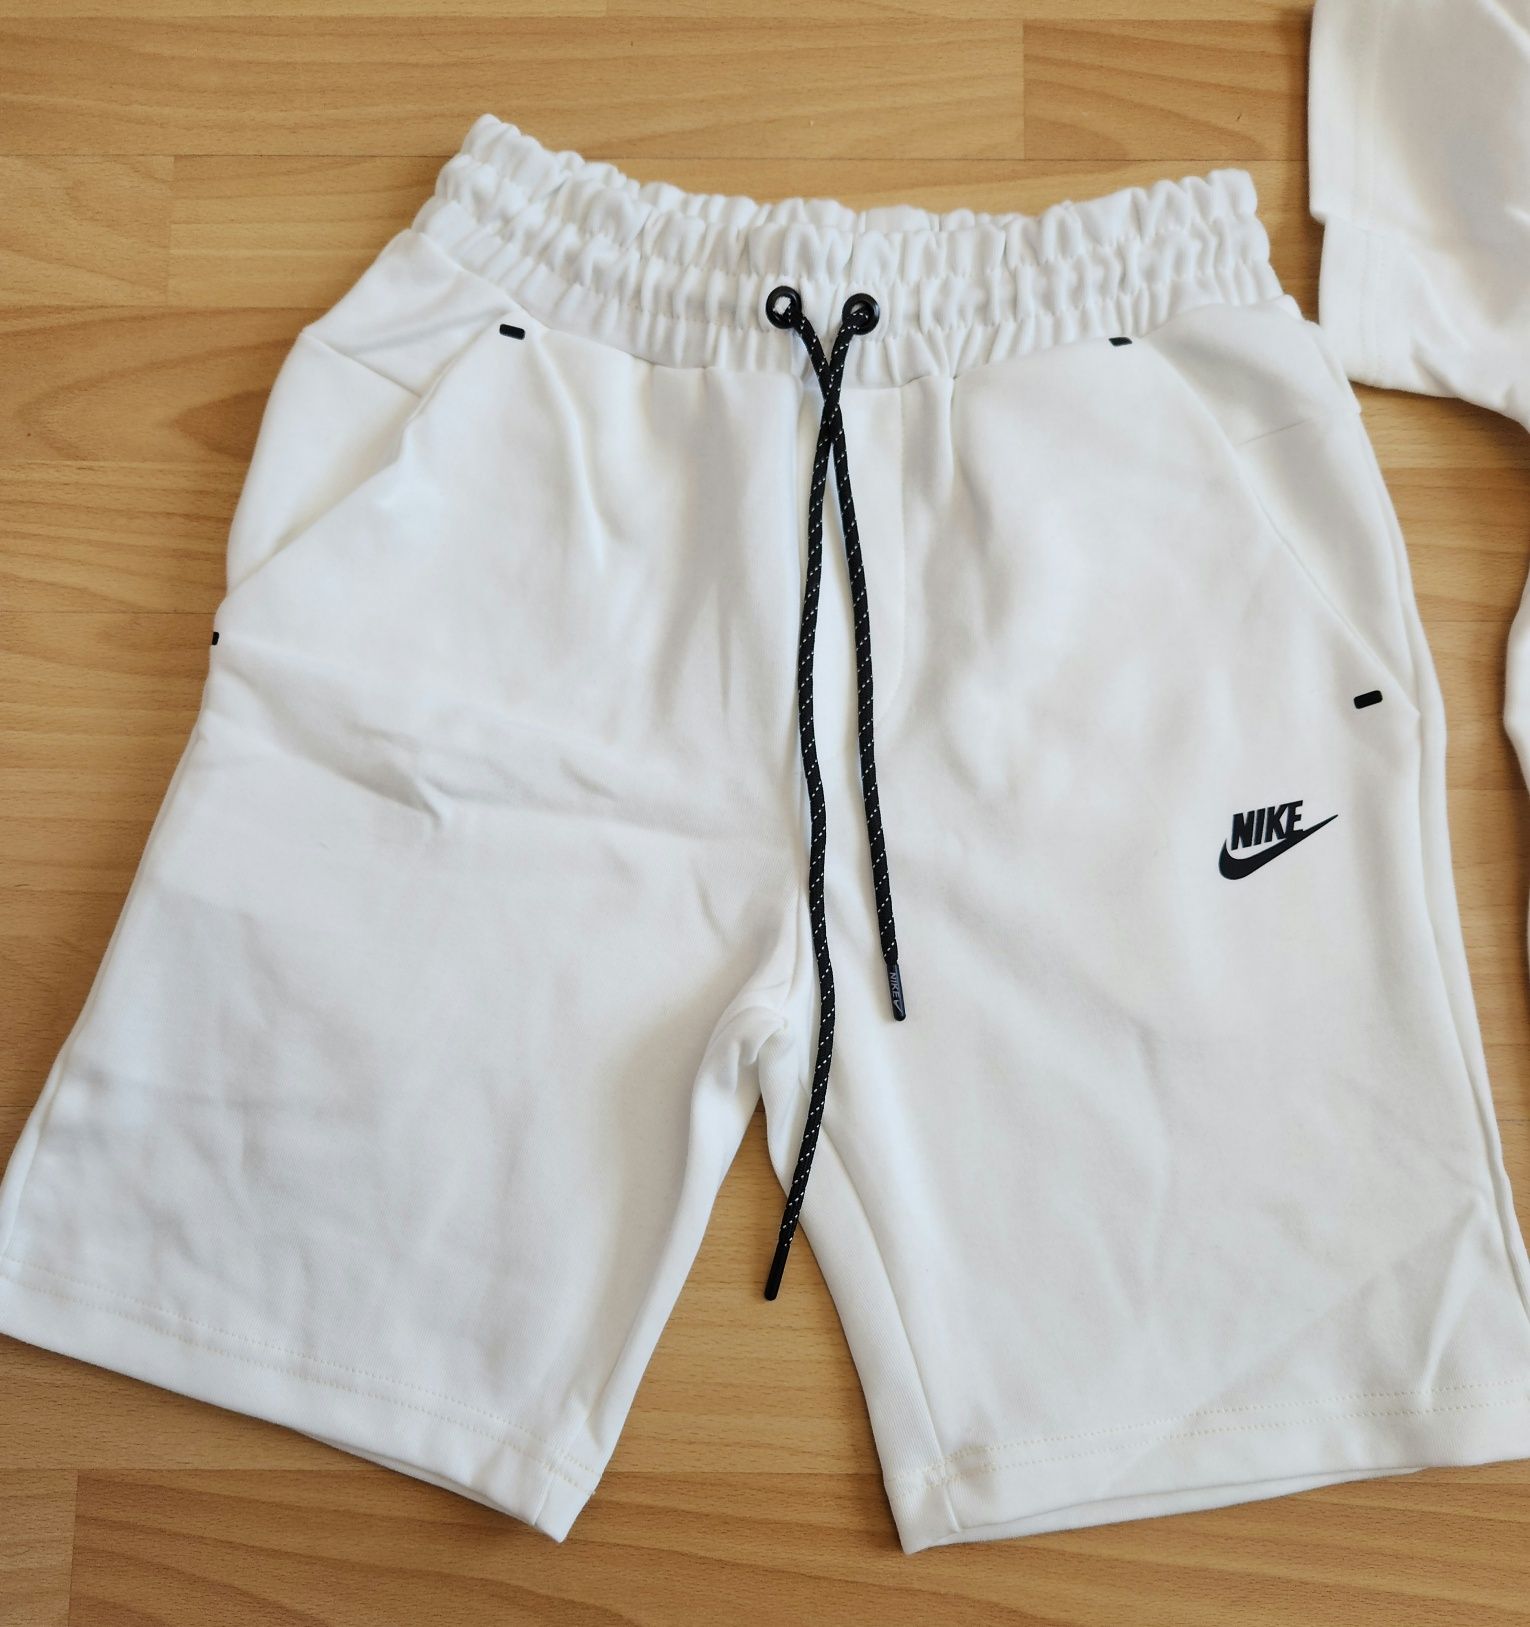 Nike Tech Fleece мъжки спортен екип с активен джоб